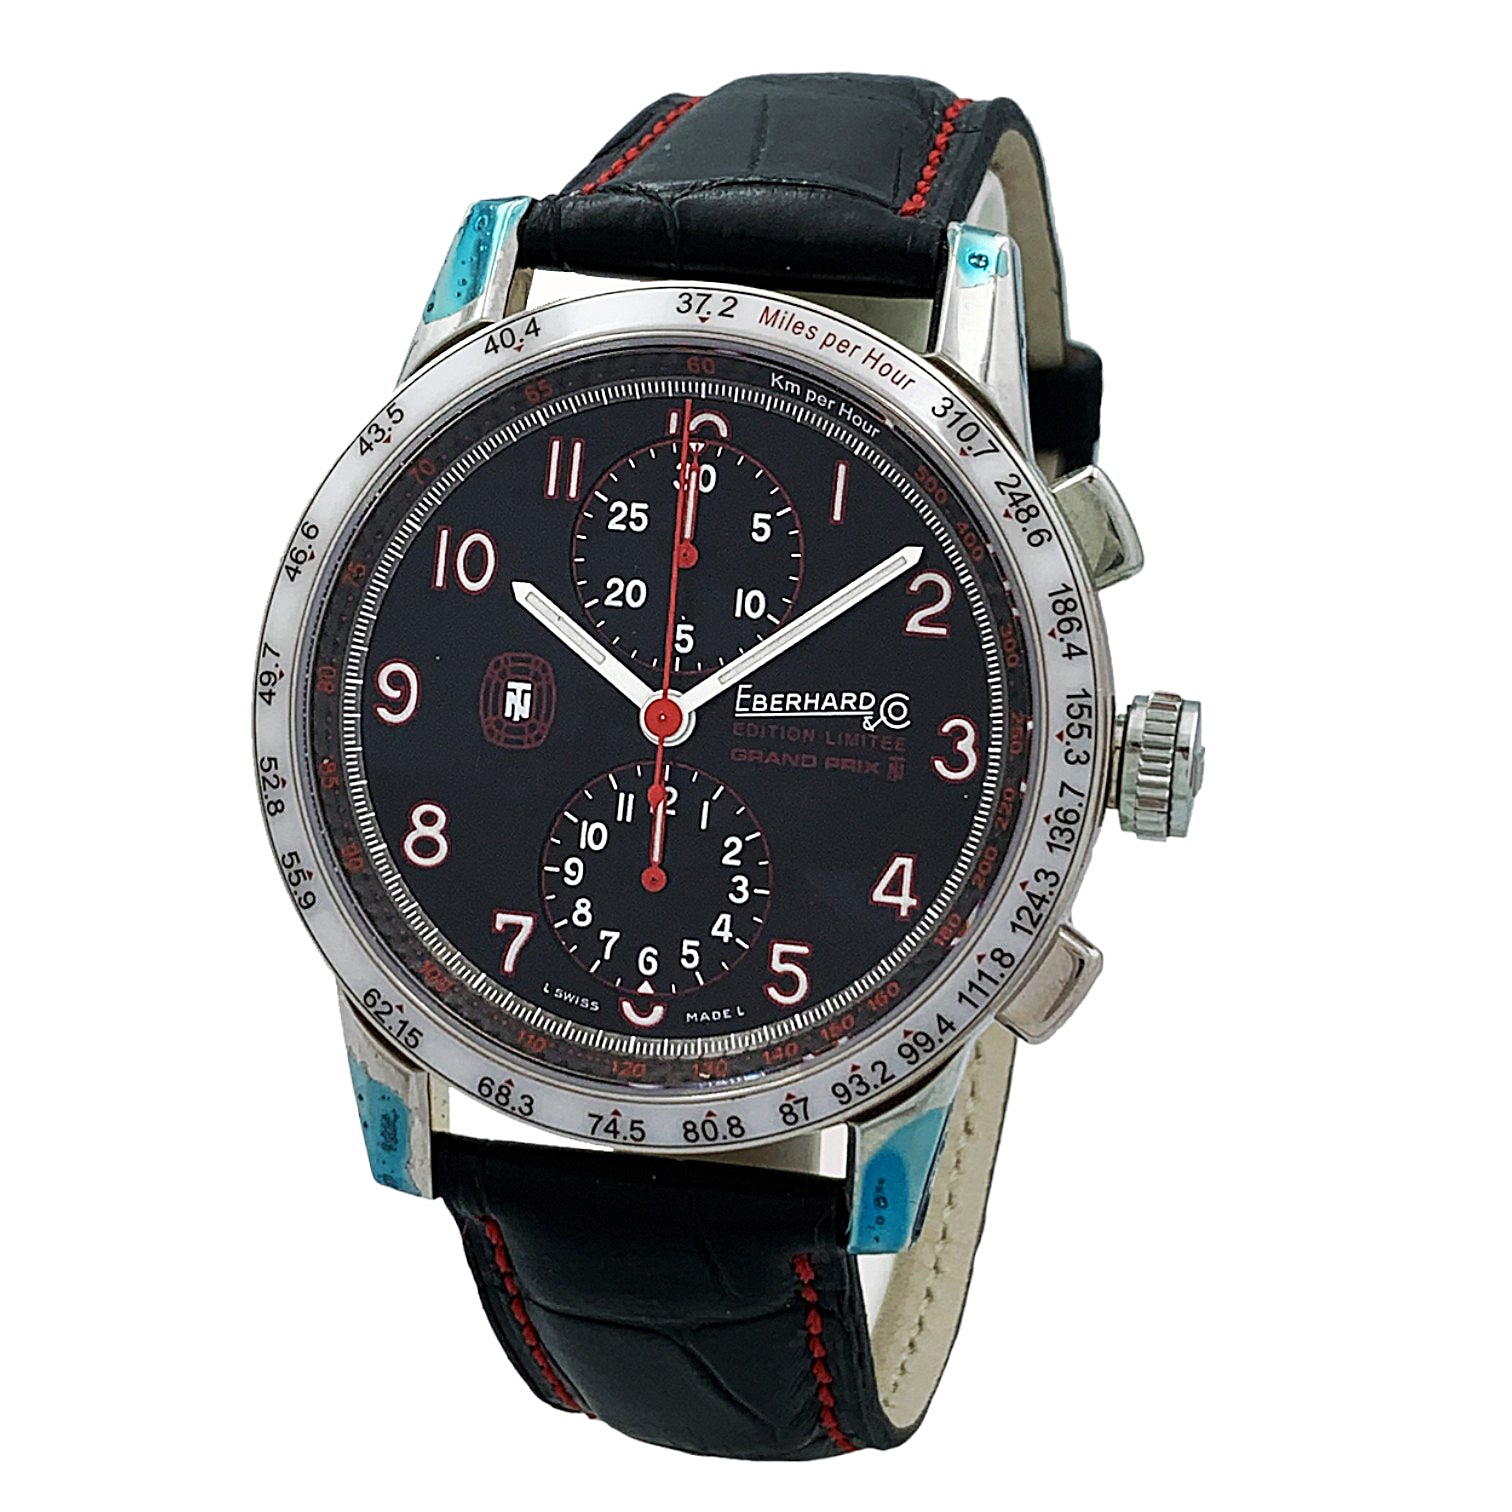 好評高品質エベラール TAZIO NUVOLARI DITION GRAND PRIX 腕時計(アナログ)